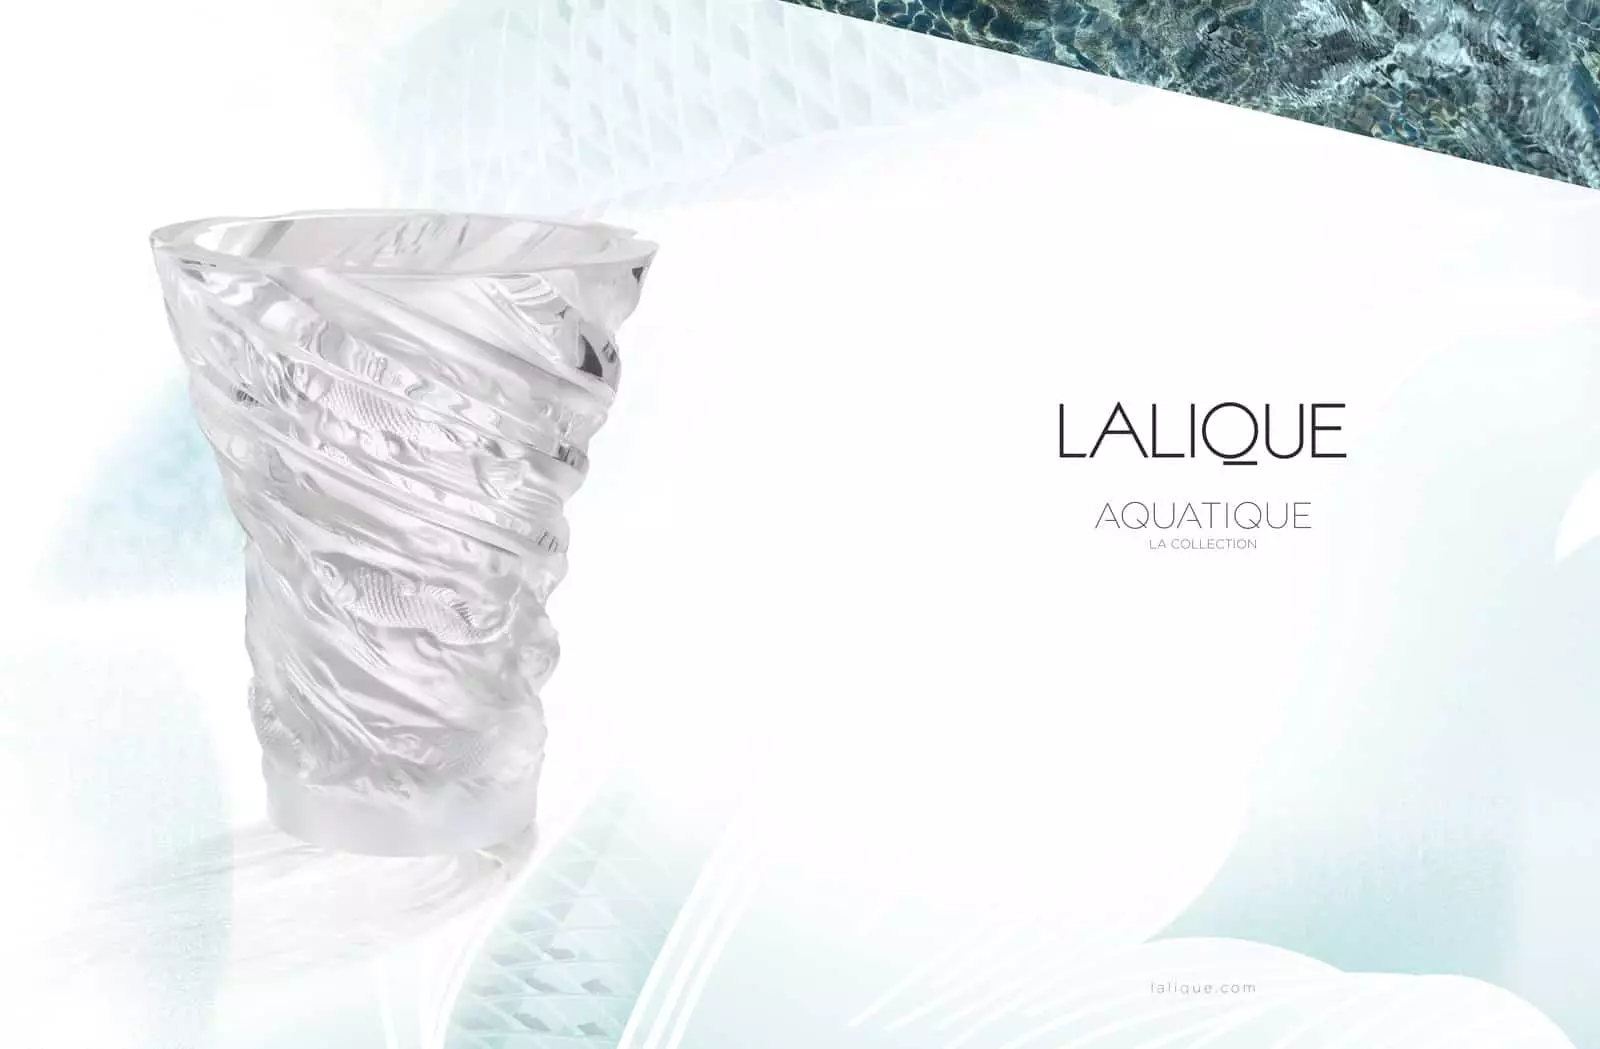 Lalique Aquatique: “Thủy Thượng Uyển” Trong Căn Biệt Thự Paris 7